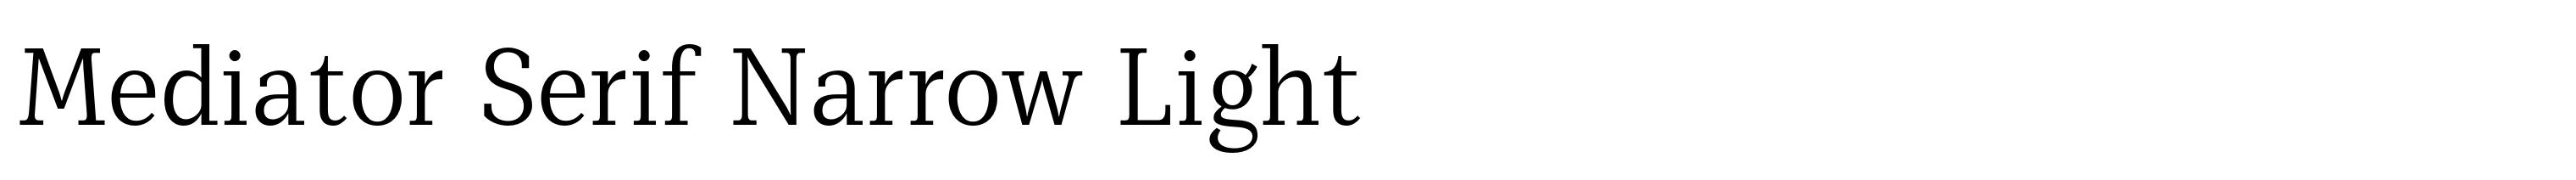 Mediator Serif Narrow Light